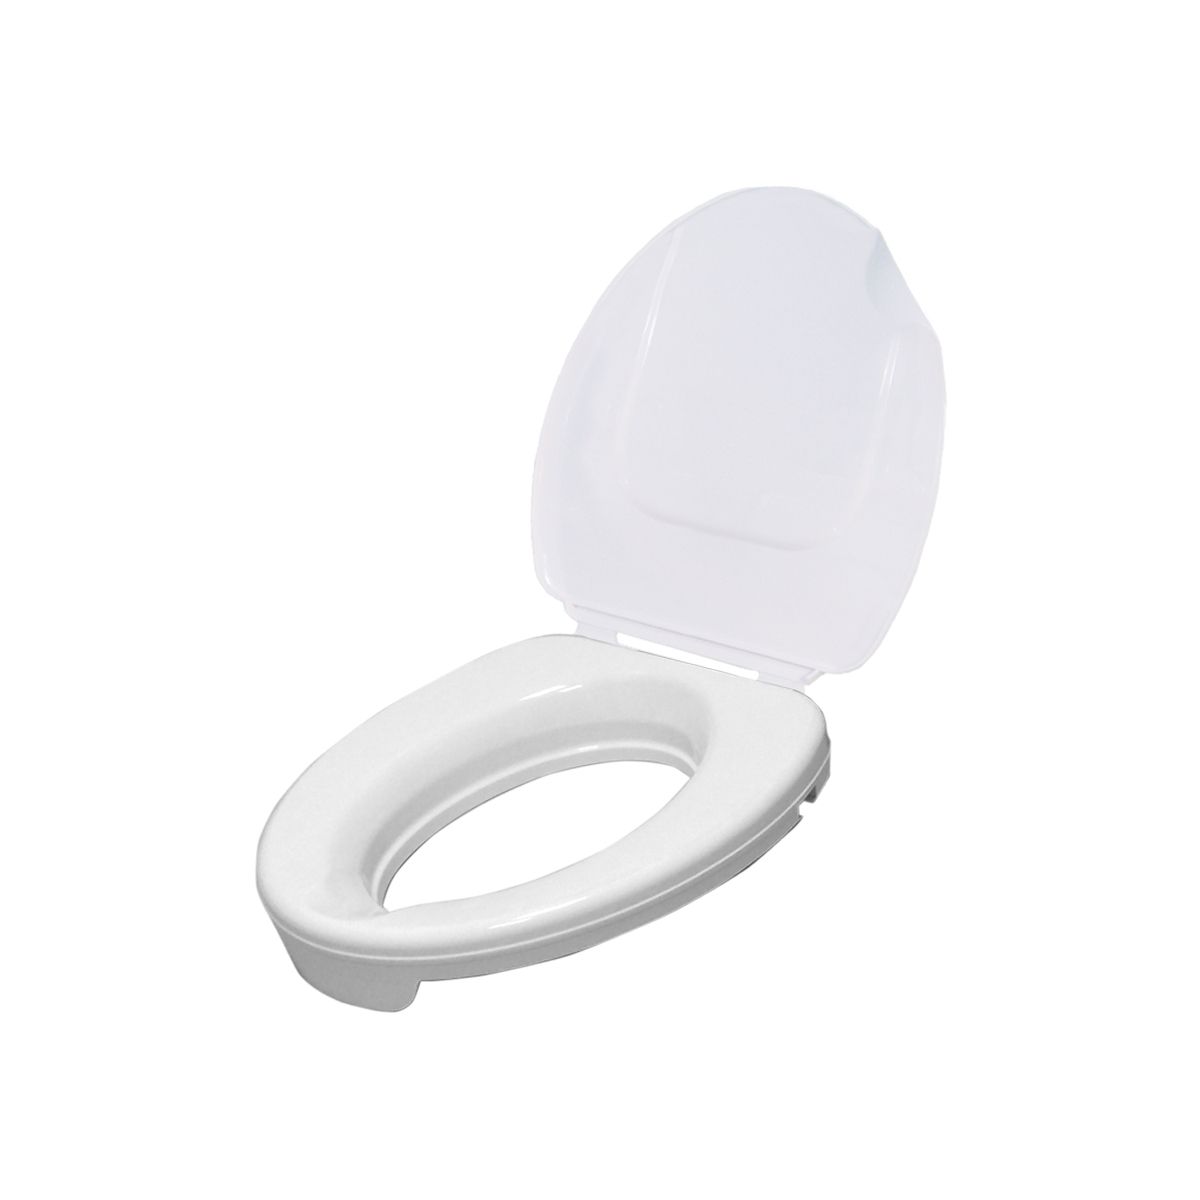 Drive Medical - Toilettensitzerhöhung Ticco2G - 5 cm Höhe mit ergonomischer Formgebung mit Deckel